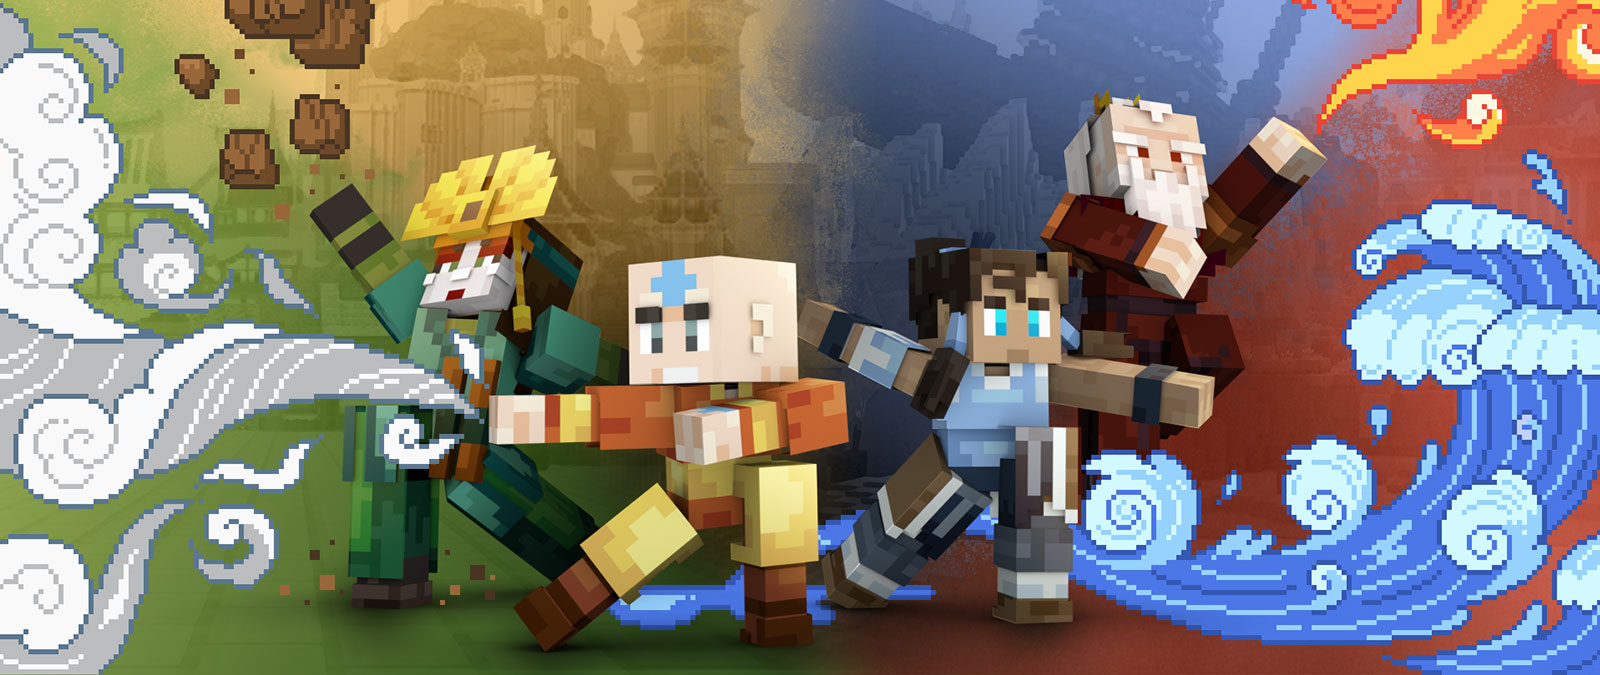 Versiones de Minecraft de Aang, Korra, un maestro tierra y un maestro fuego posan juntos, demostrando sus poderes elementales.